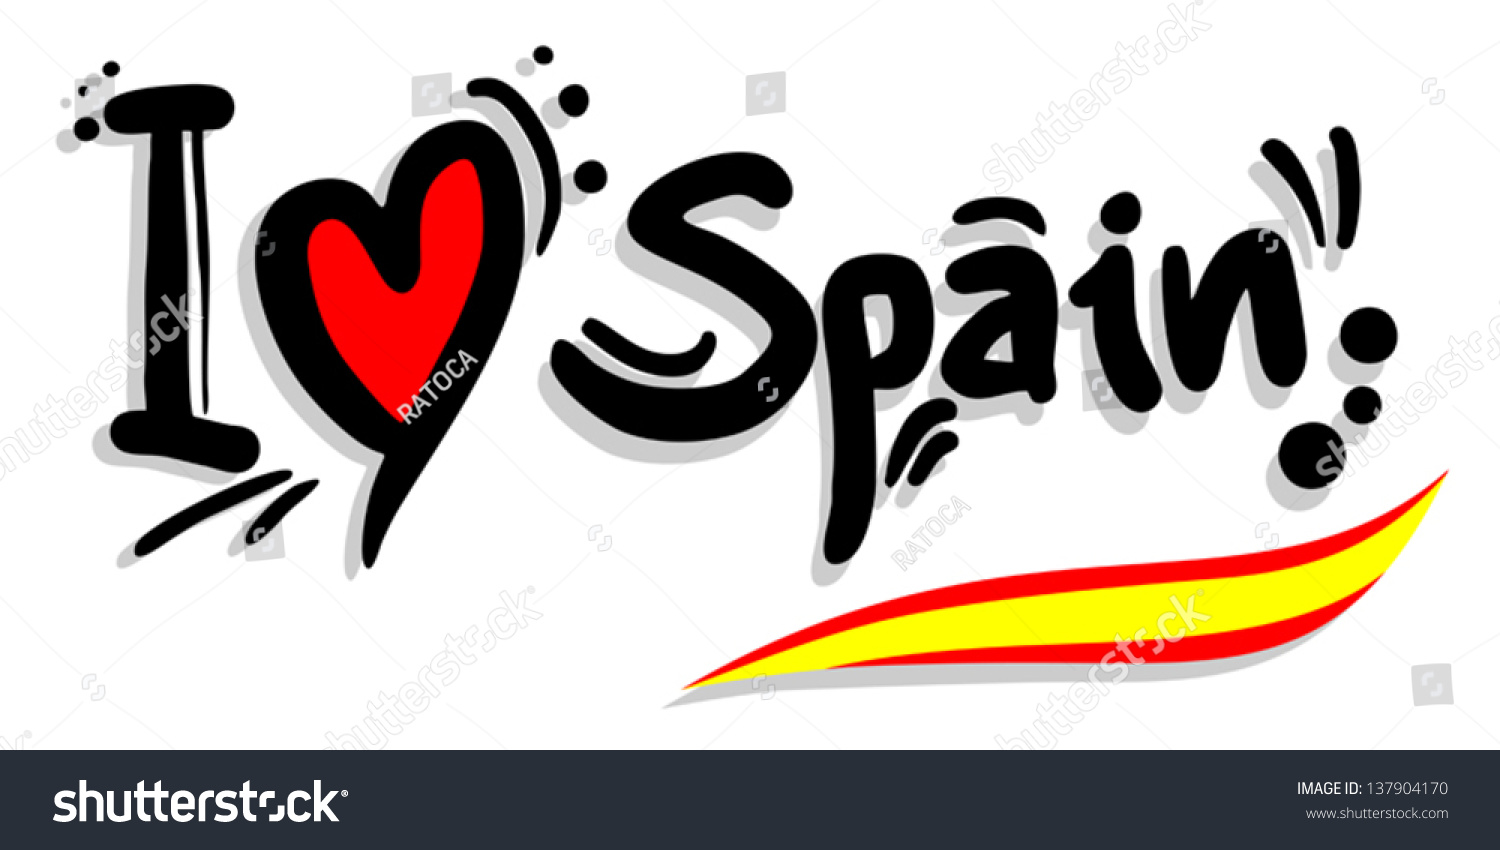 Love spain. Испания надпись. Я люблю Испанию. Надписи на испанском языке. Я люблю испанский язык.